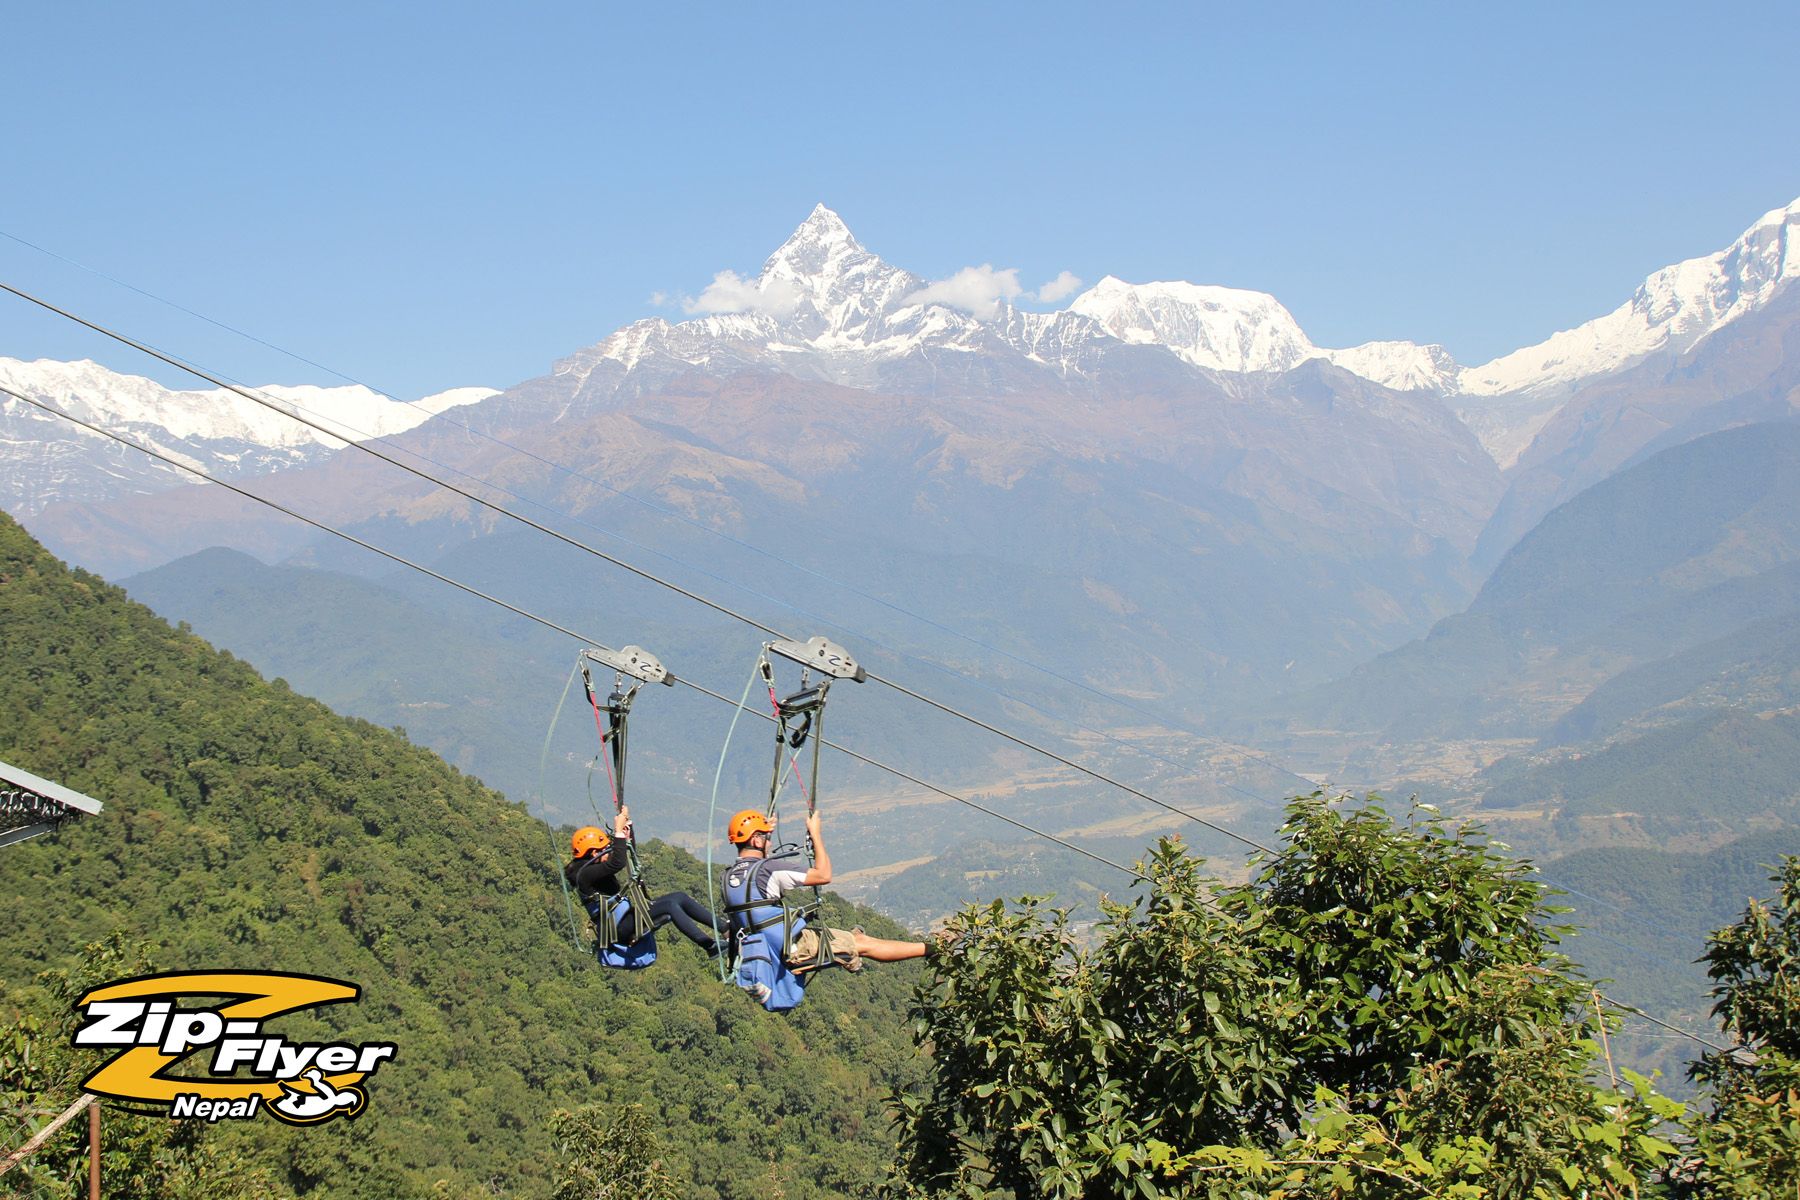 Best 9 Zipline Destinations in Nepal